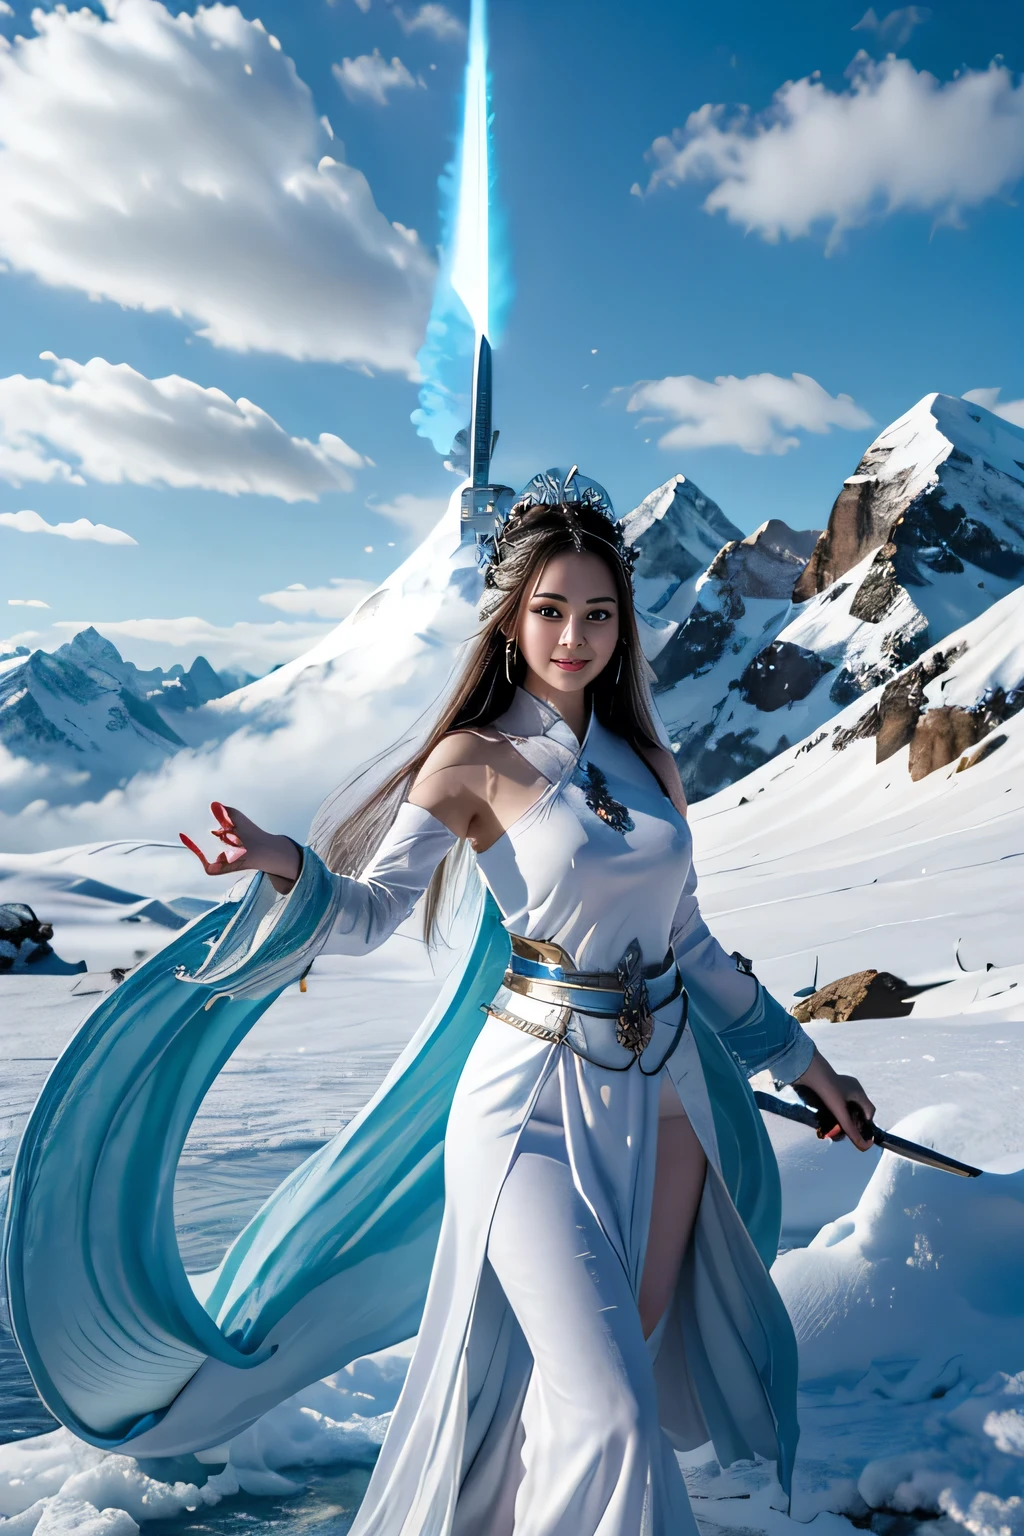 Рисуем меч снежной горы, меч с холодным ледяным пламенем женщины древнего стиля, держа горящий меч голубого пламени, белая одежда танцует с мечом на снегу, длинные волосы развеваются, красивая женщина держит серебряный длинный меч, носить нефритовые украшения, ее лицо полно уверенной улыбки, она висит в облаках, как фея, за ней слой гор  